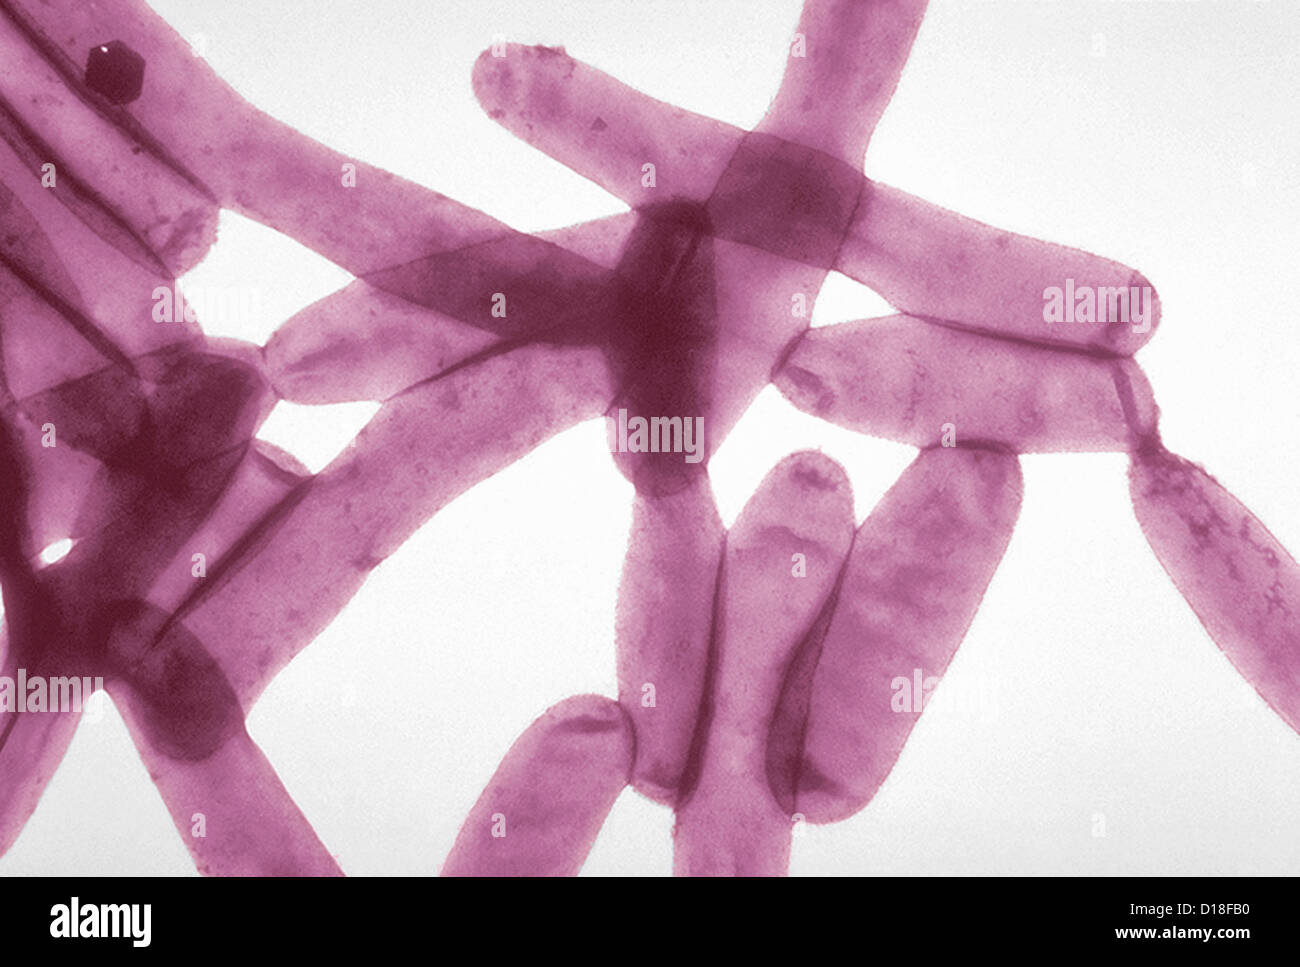 Electron micrograph of Legionella bacteria, 6500x Stock Photo